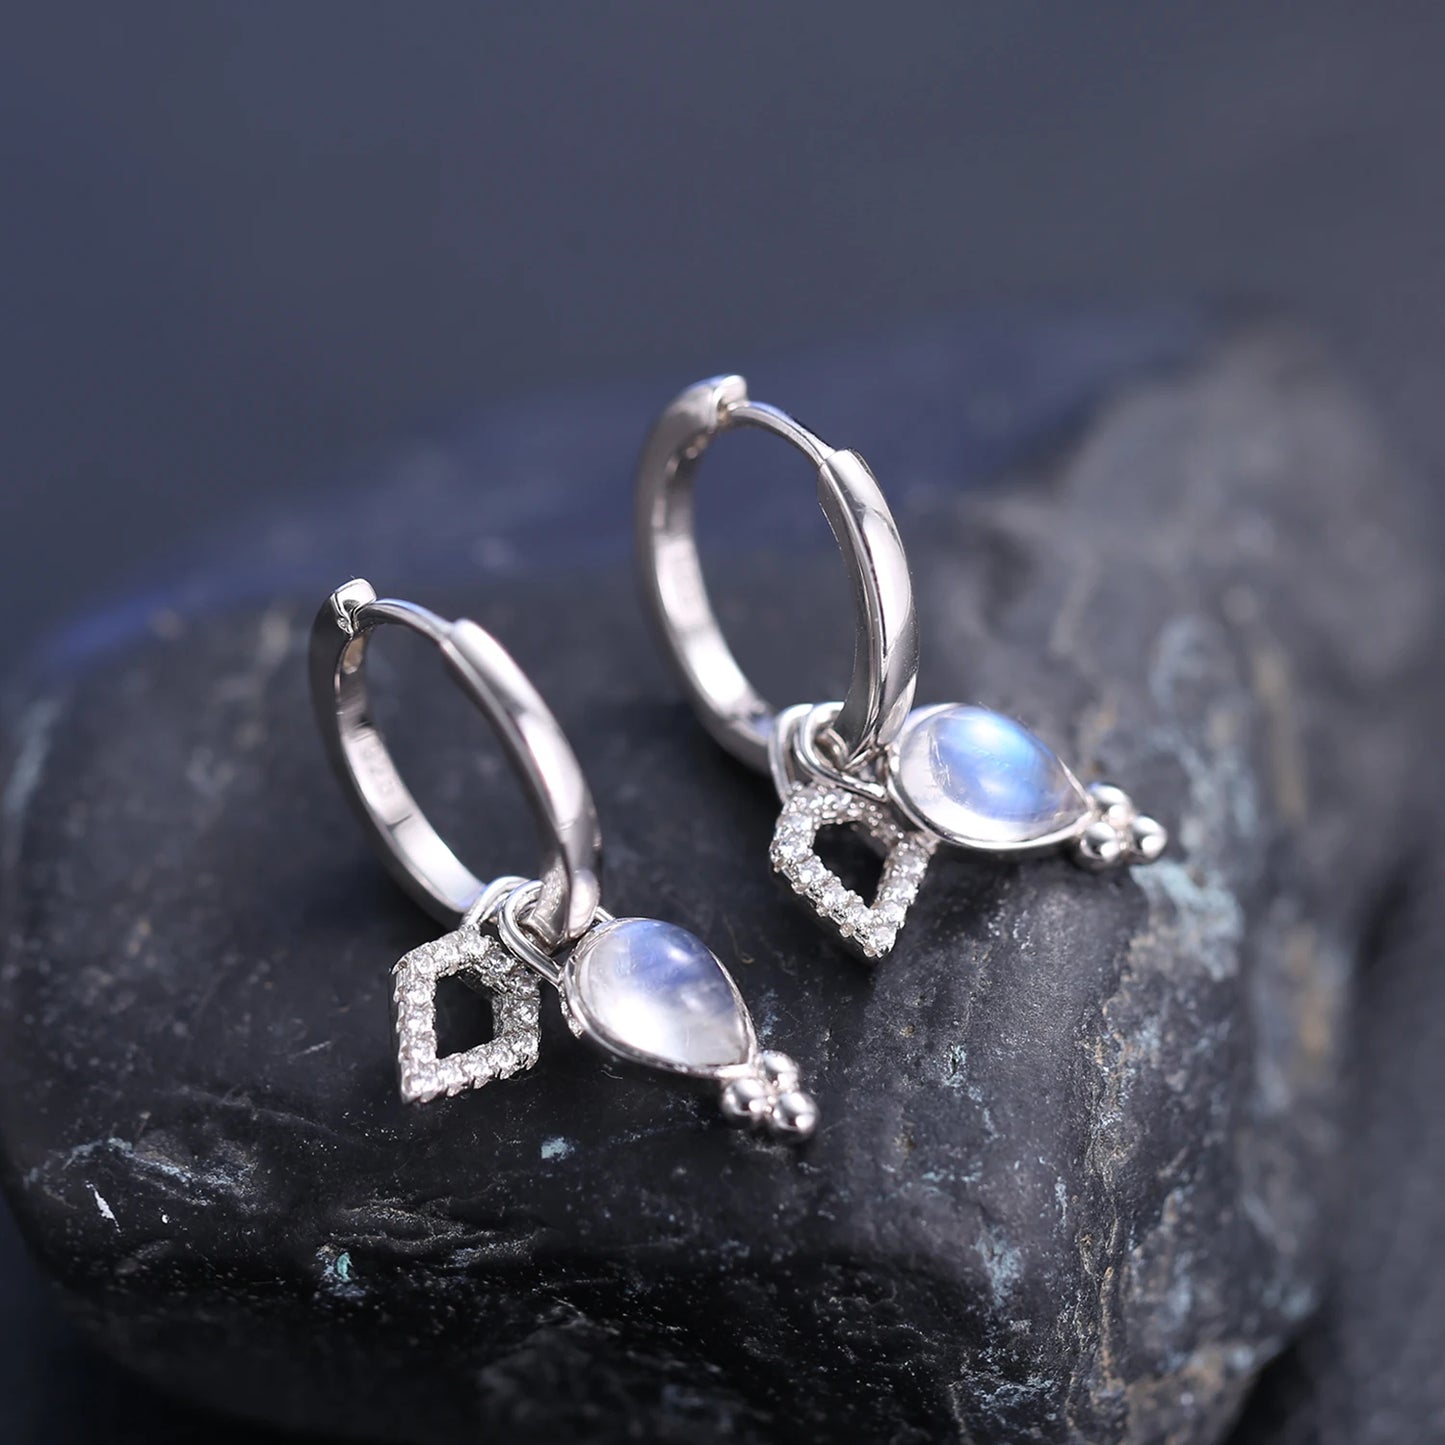 GEM'S BALLET 925 Sterling Silver Boho Rainbow Earrings Natural Milky Blue Moonstone Healing Crystal Dangle Earrings Gift For Her